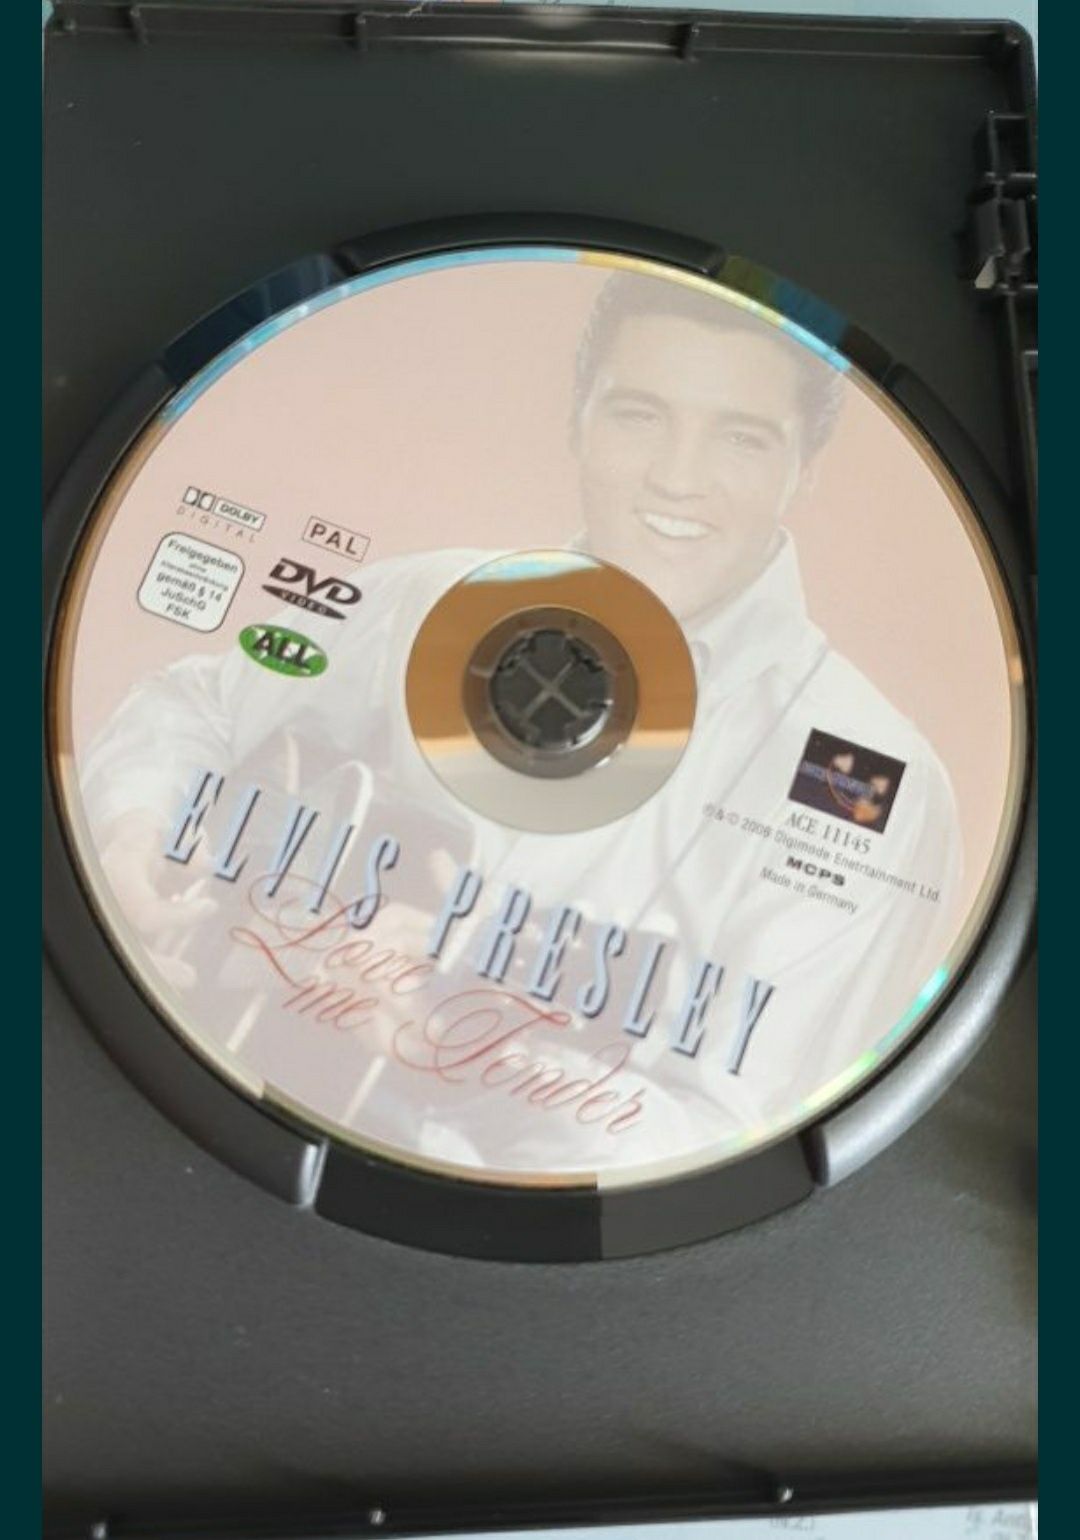 Elvis Presley DVD concertos